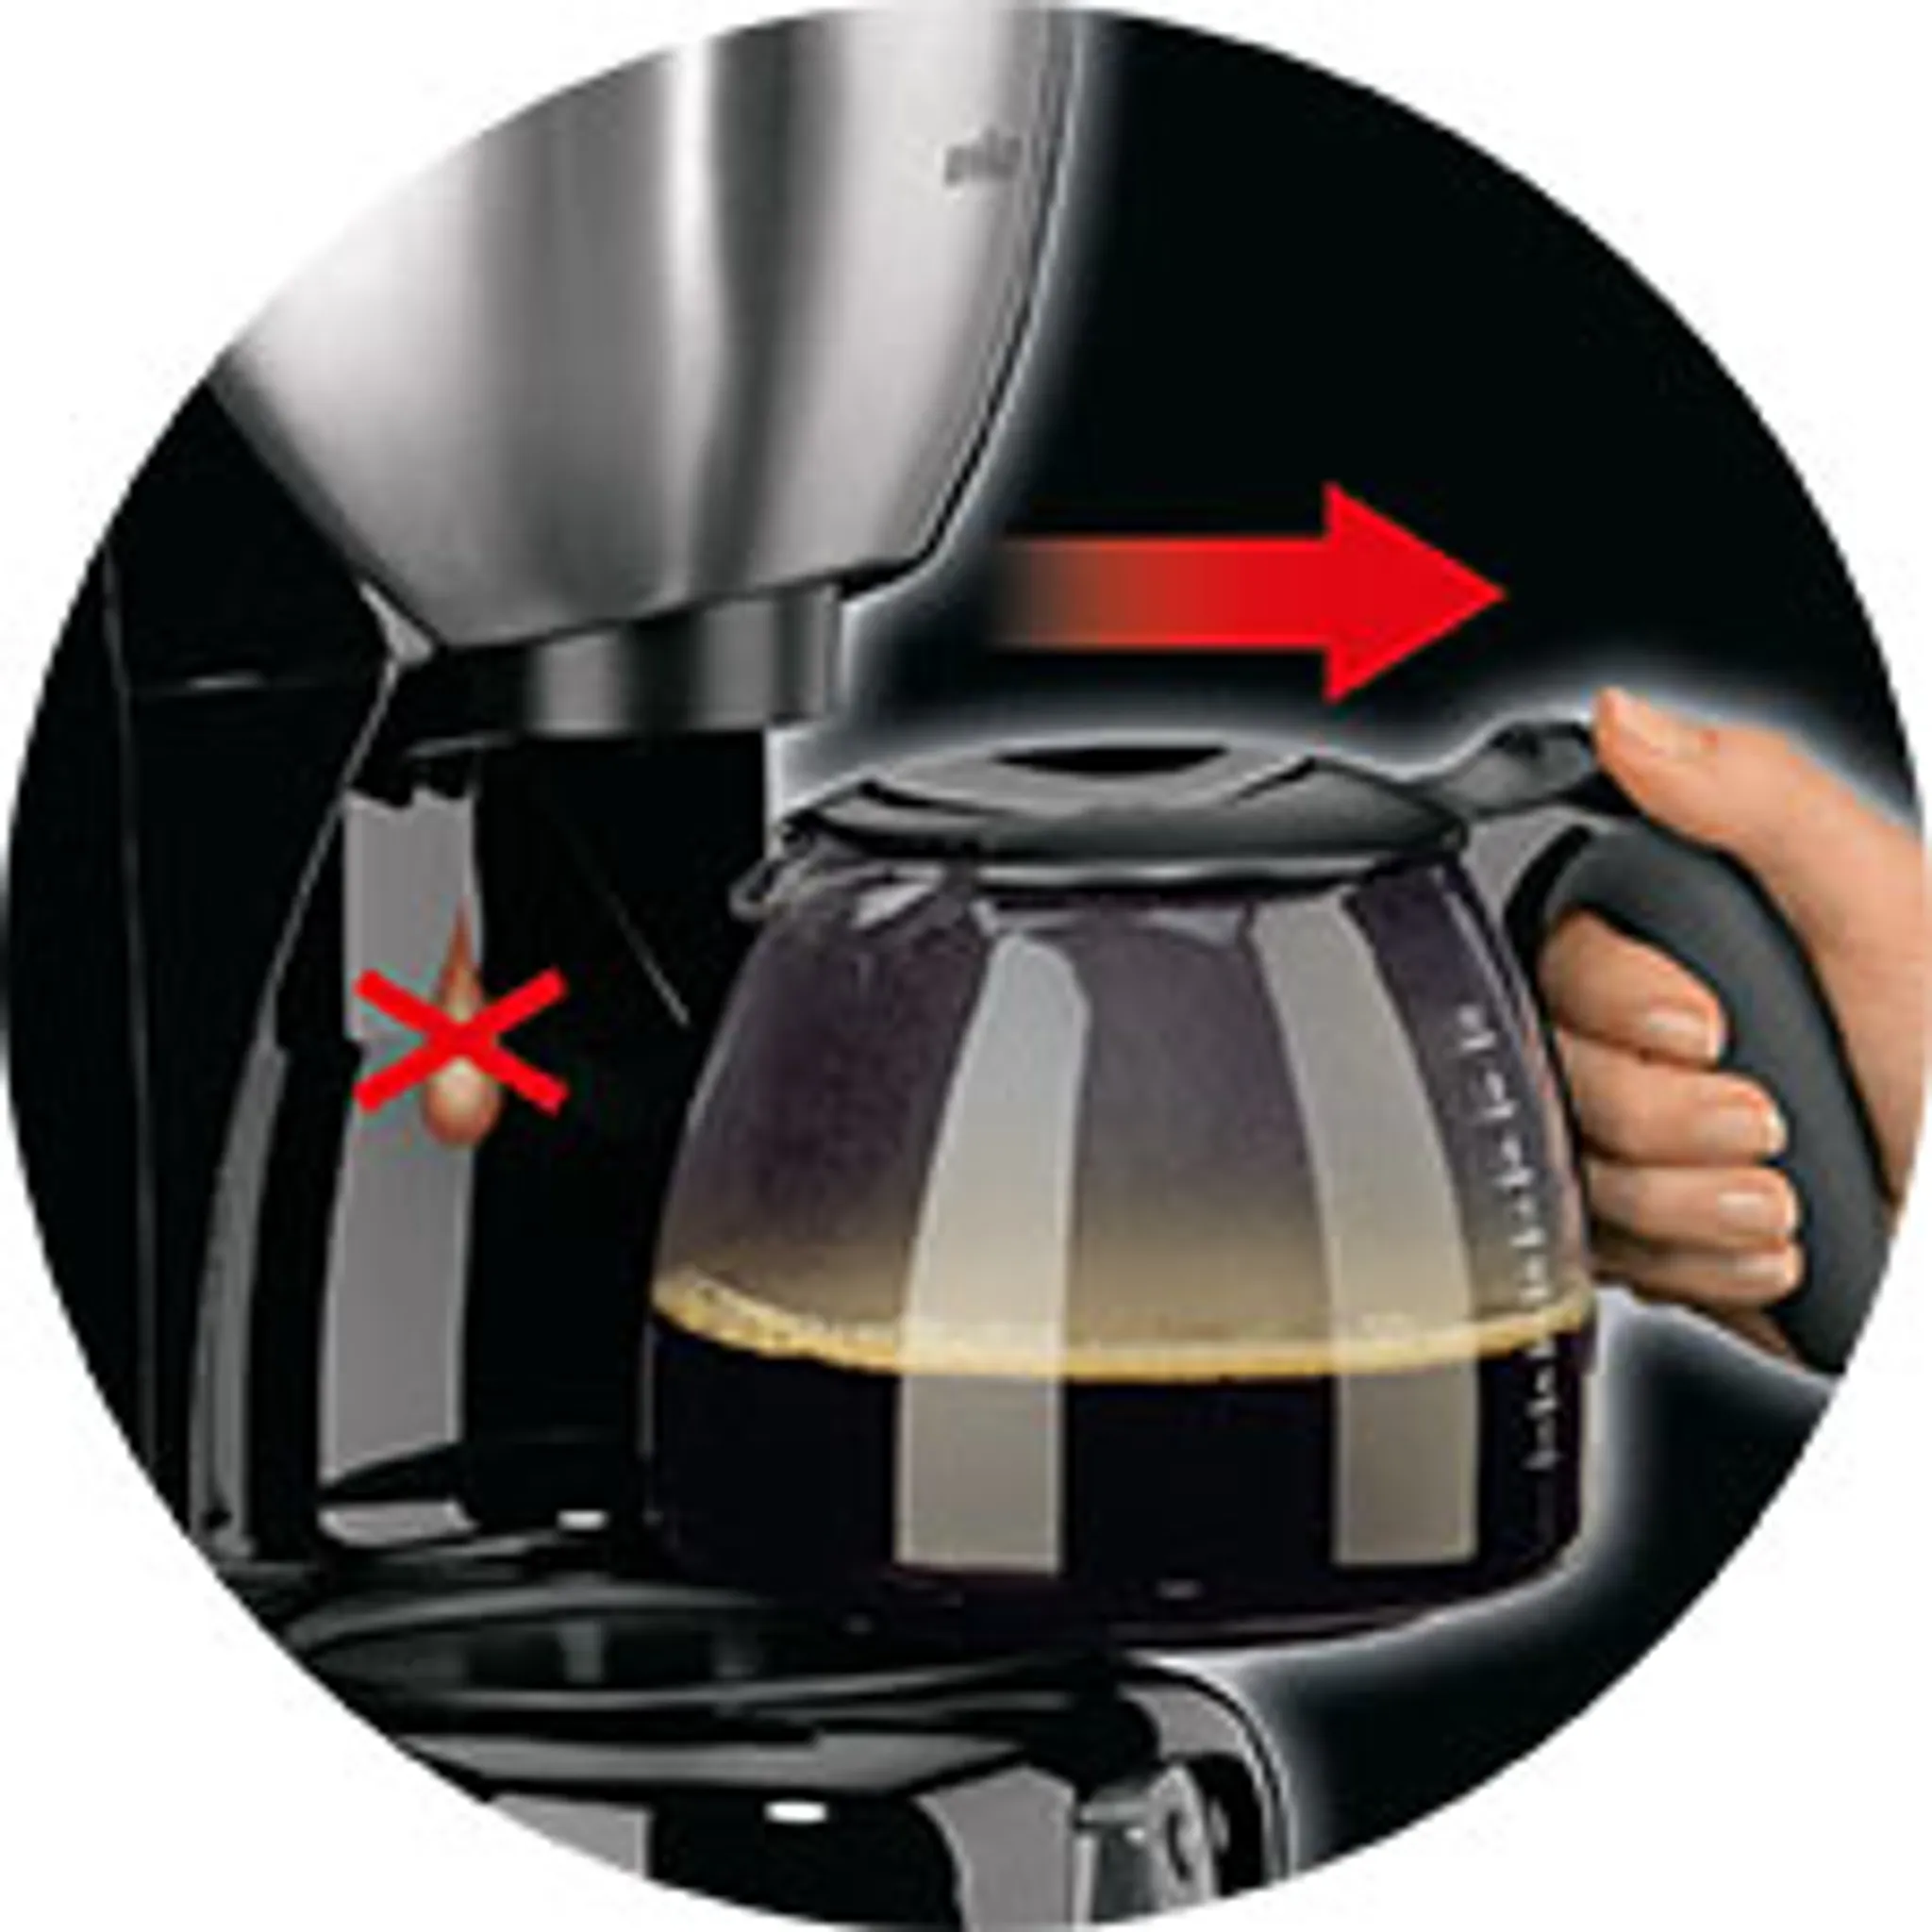 Acciaio inossidabile macchina per caffè Braun KF 570/1 Libera installazione Semi-automatica Macchina da caffè con filtro 10tazze Nero 